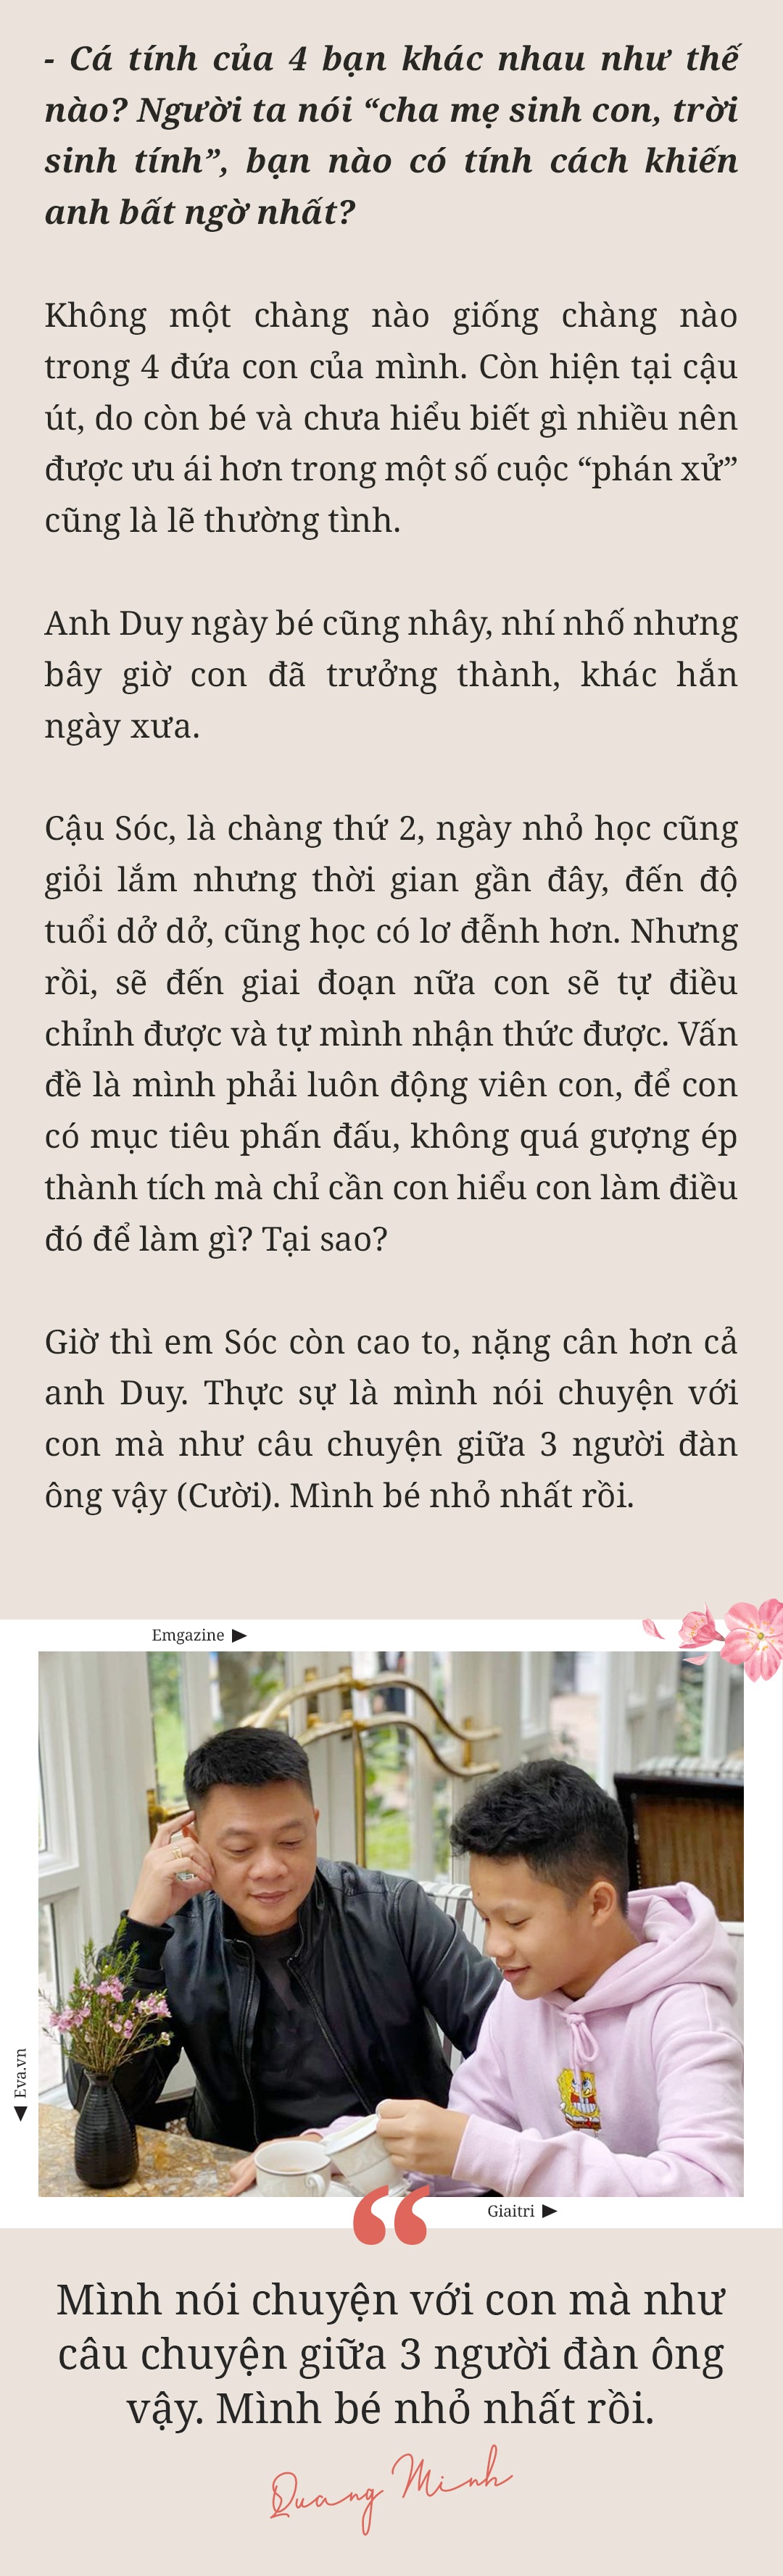 MC Trần Quang Minh: amp;#34;Nếu mừng tuổi ít, các con thấy buồn một thì mình tủi thân mườiamp;#34; - 24